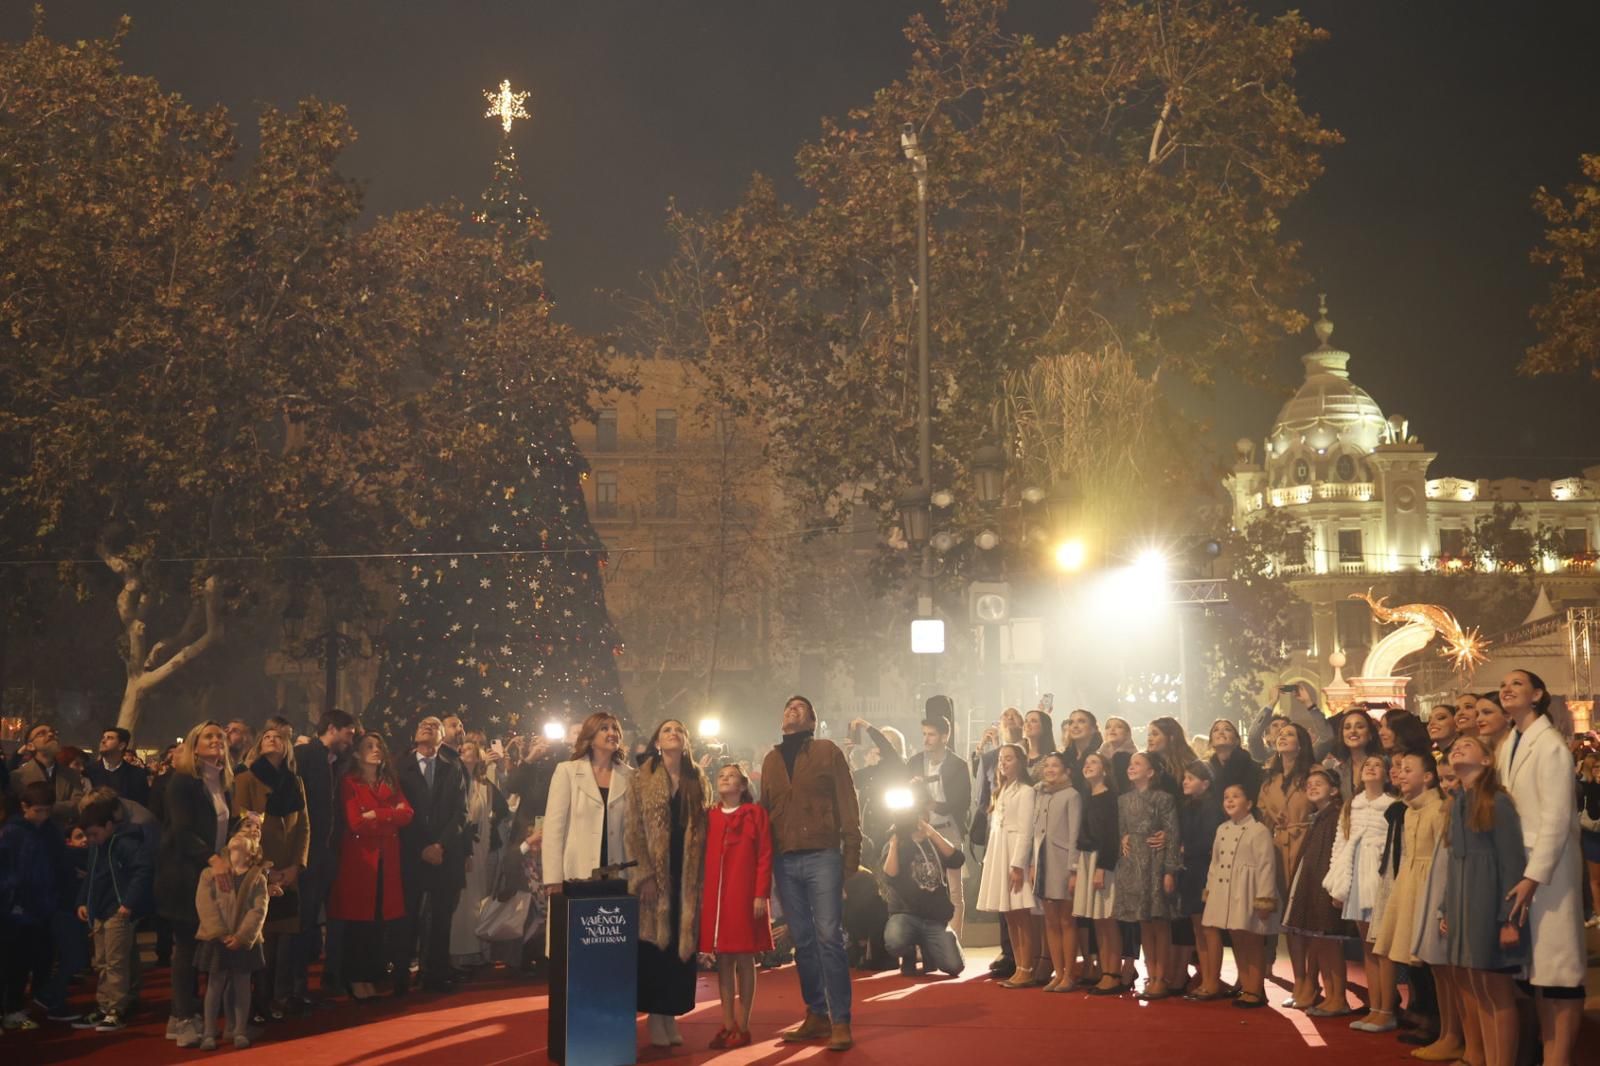 La Navidad llega a València con el encendido de luces